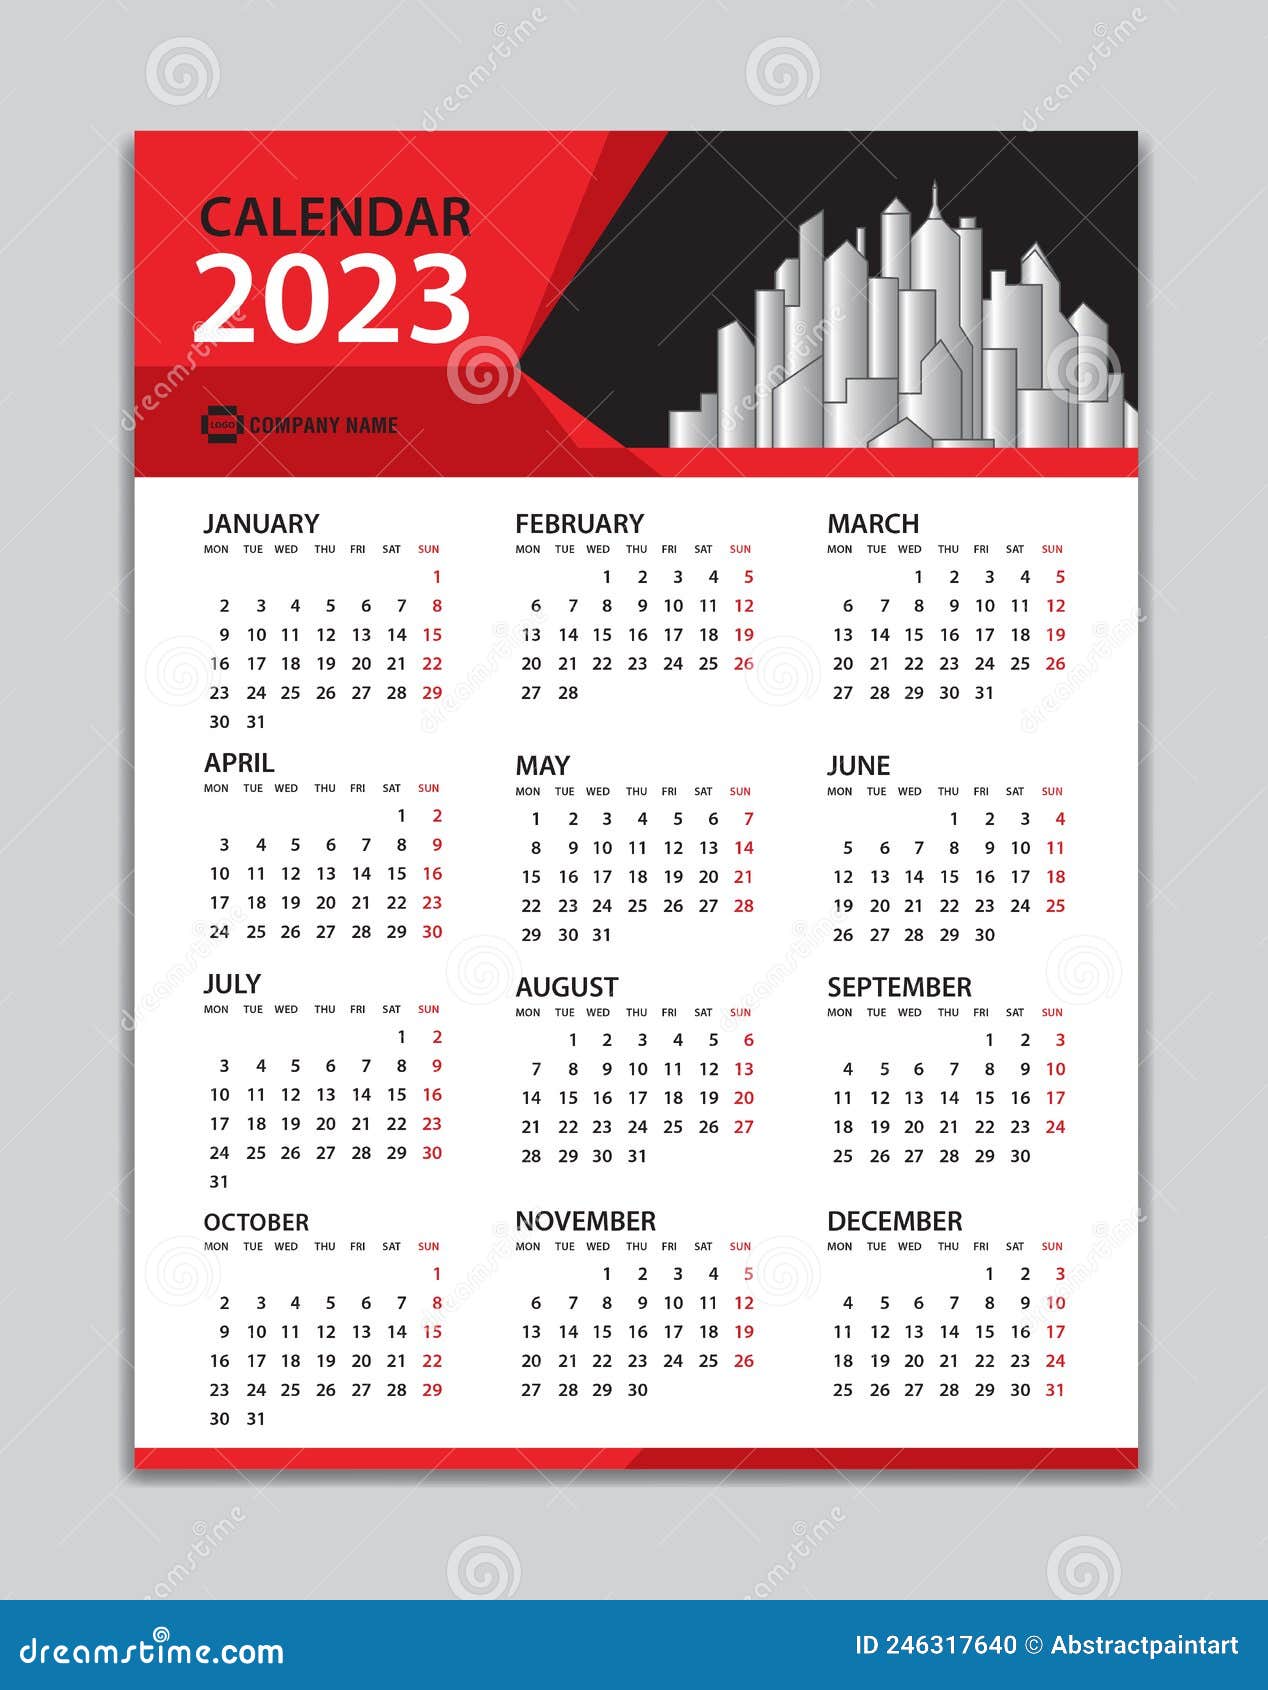 Calendrier de bureau 2023-2024 - Calendrier bureau/mur, papier